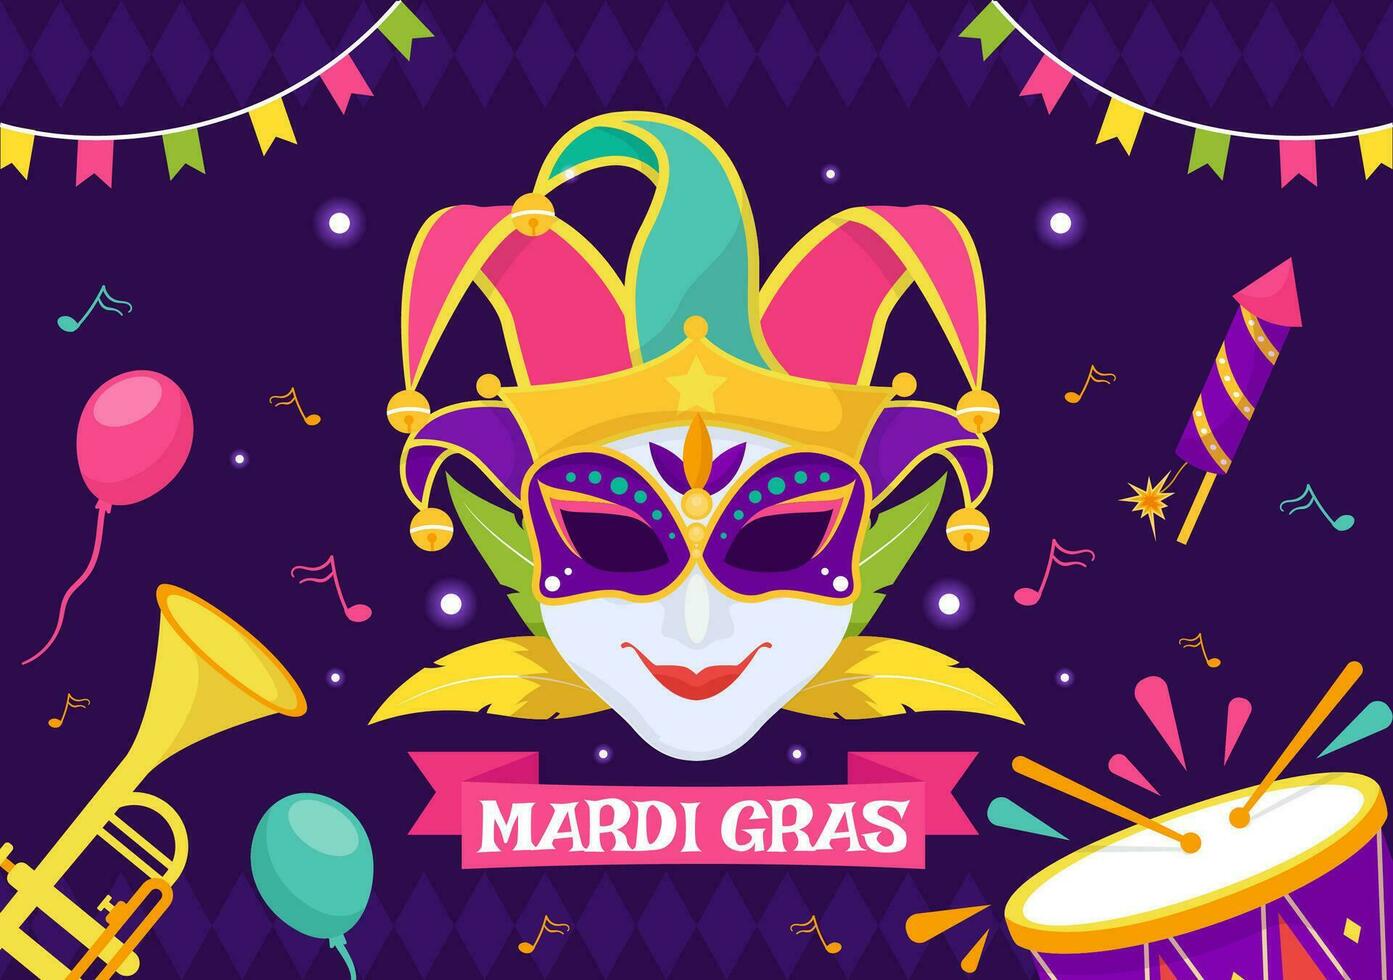 Karneval gras Karneval Vektor Illustration. Übersetzung ist Französisch zum Fett Dienstag. Festival mit Masken, Marakas, Gitarre und Gefieder auf lila Hintergrund